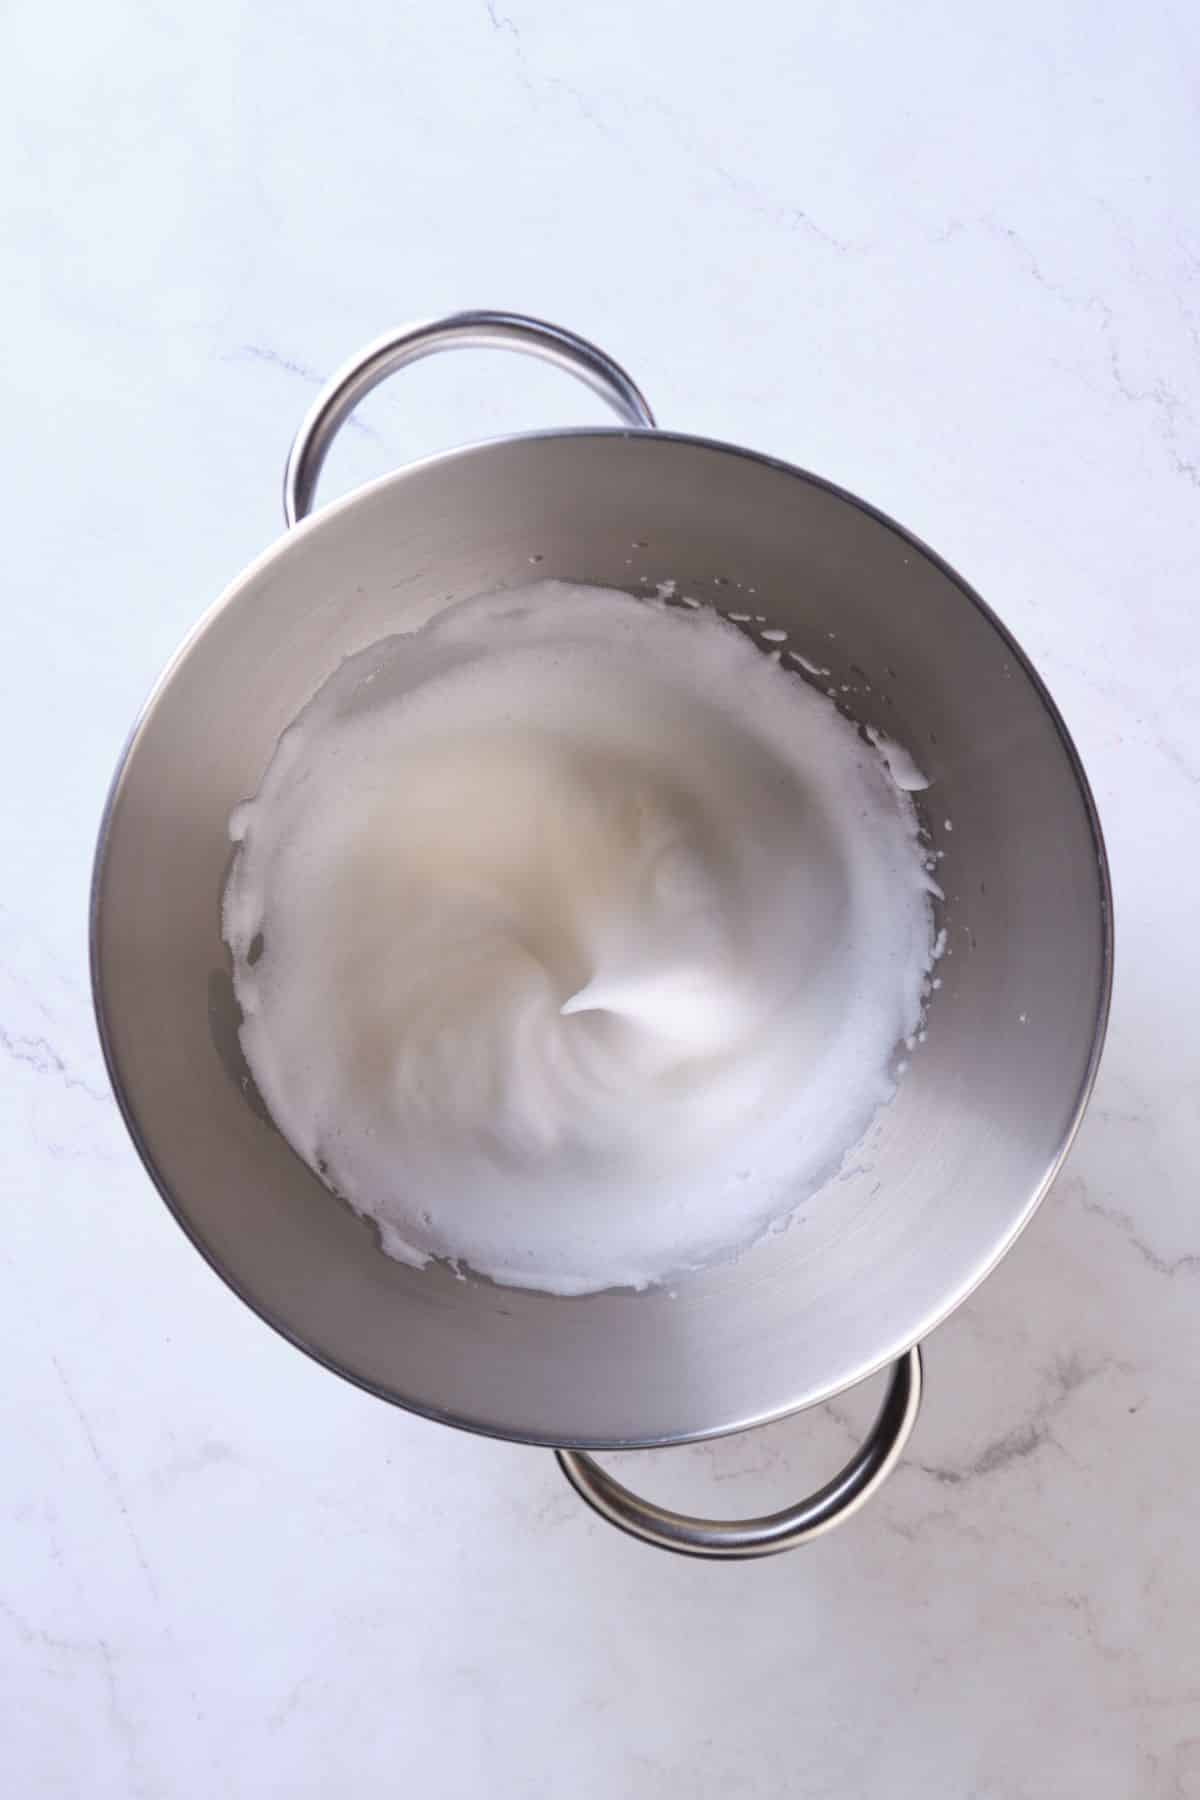 whipping egg whites for traditional creaming method cake batter.